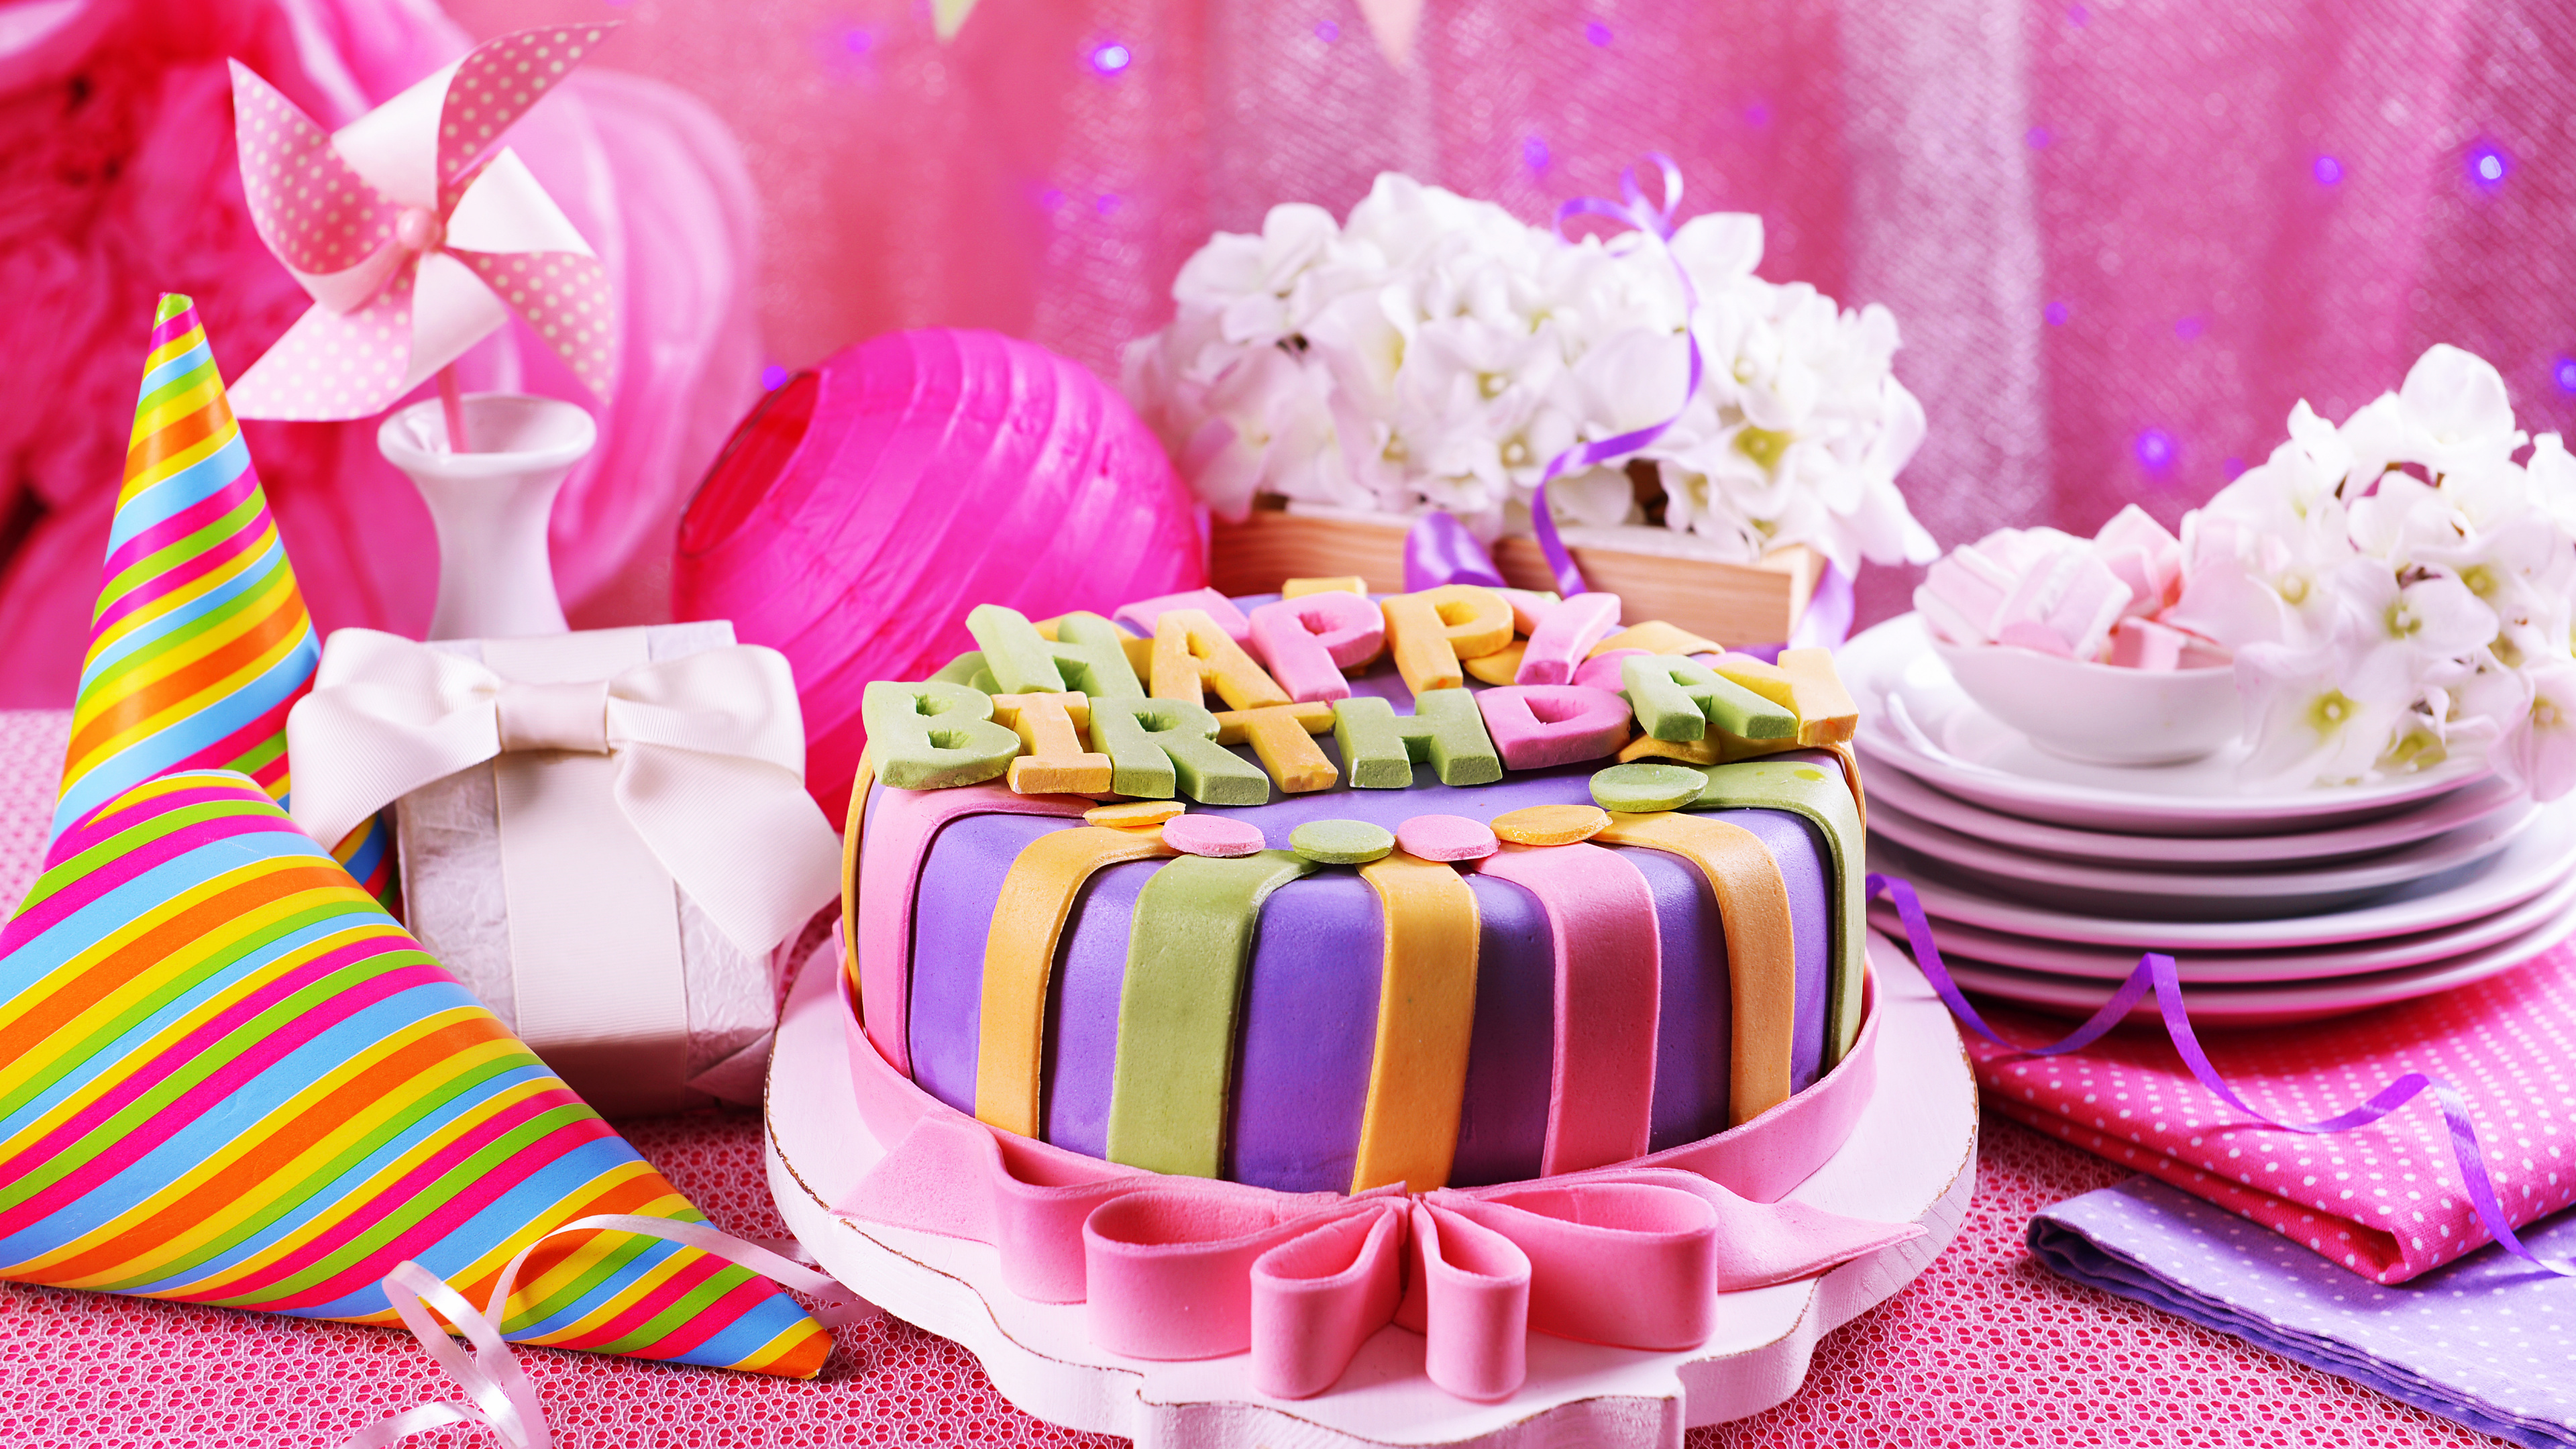 生日, 缔约方, 生日蛋糕, 食品, 甜头 壁纸 3840x2160 允许